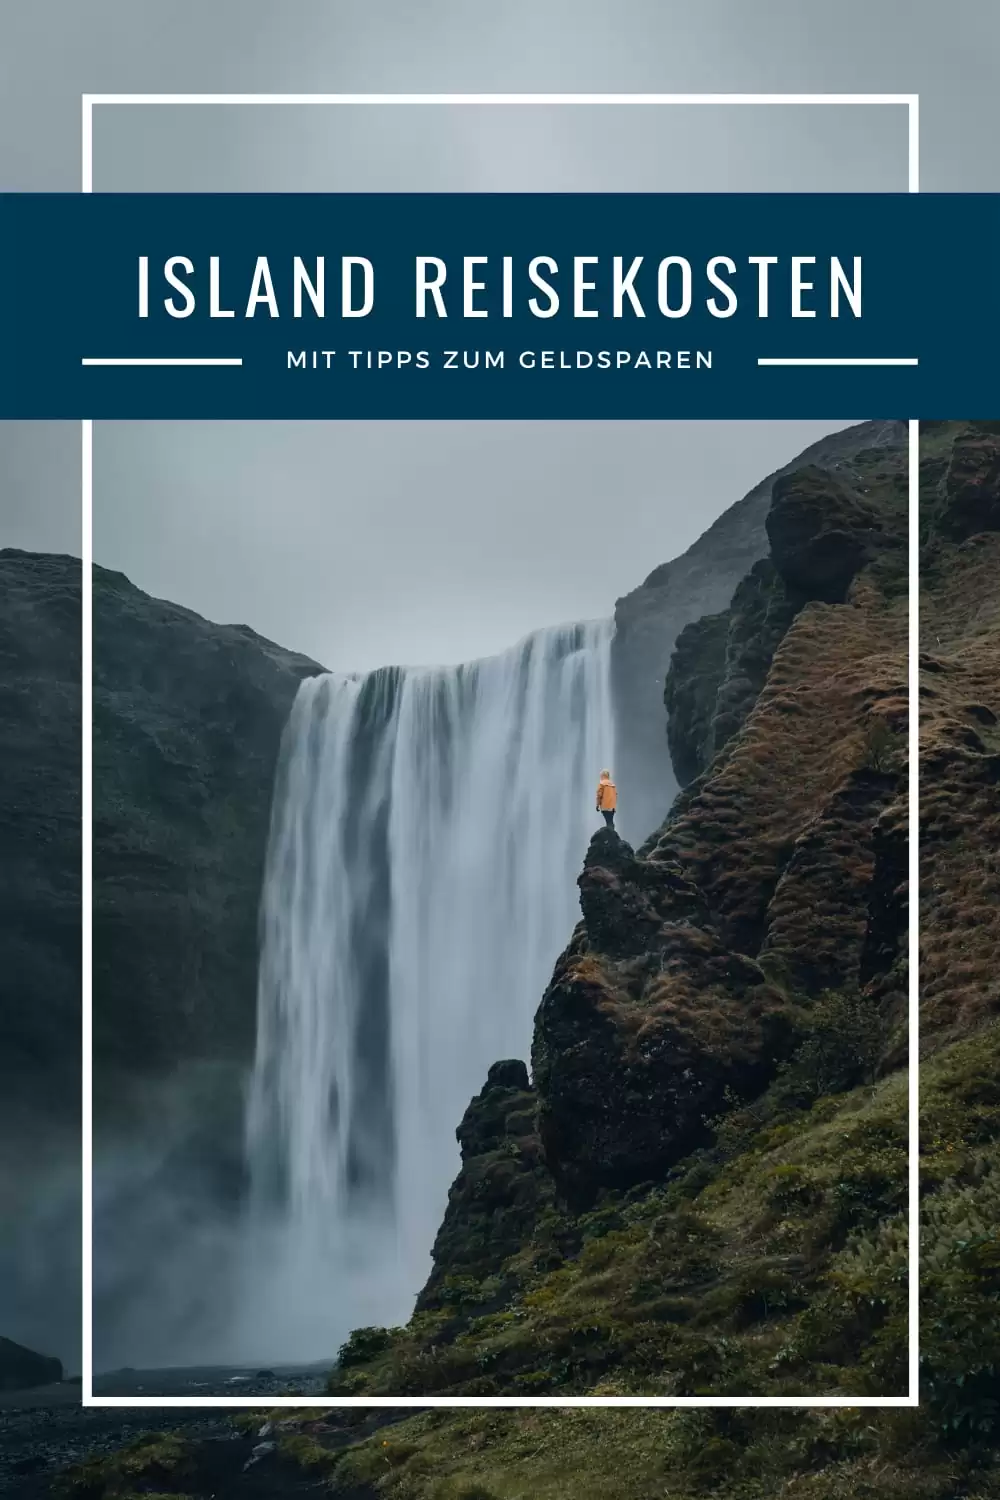 Island Reise: Was kostet ein Urlaub in Island?